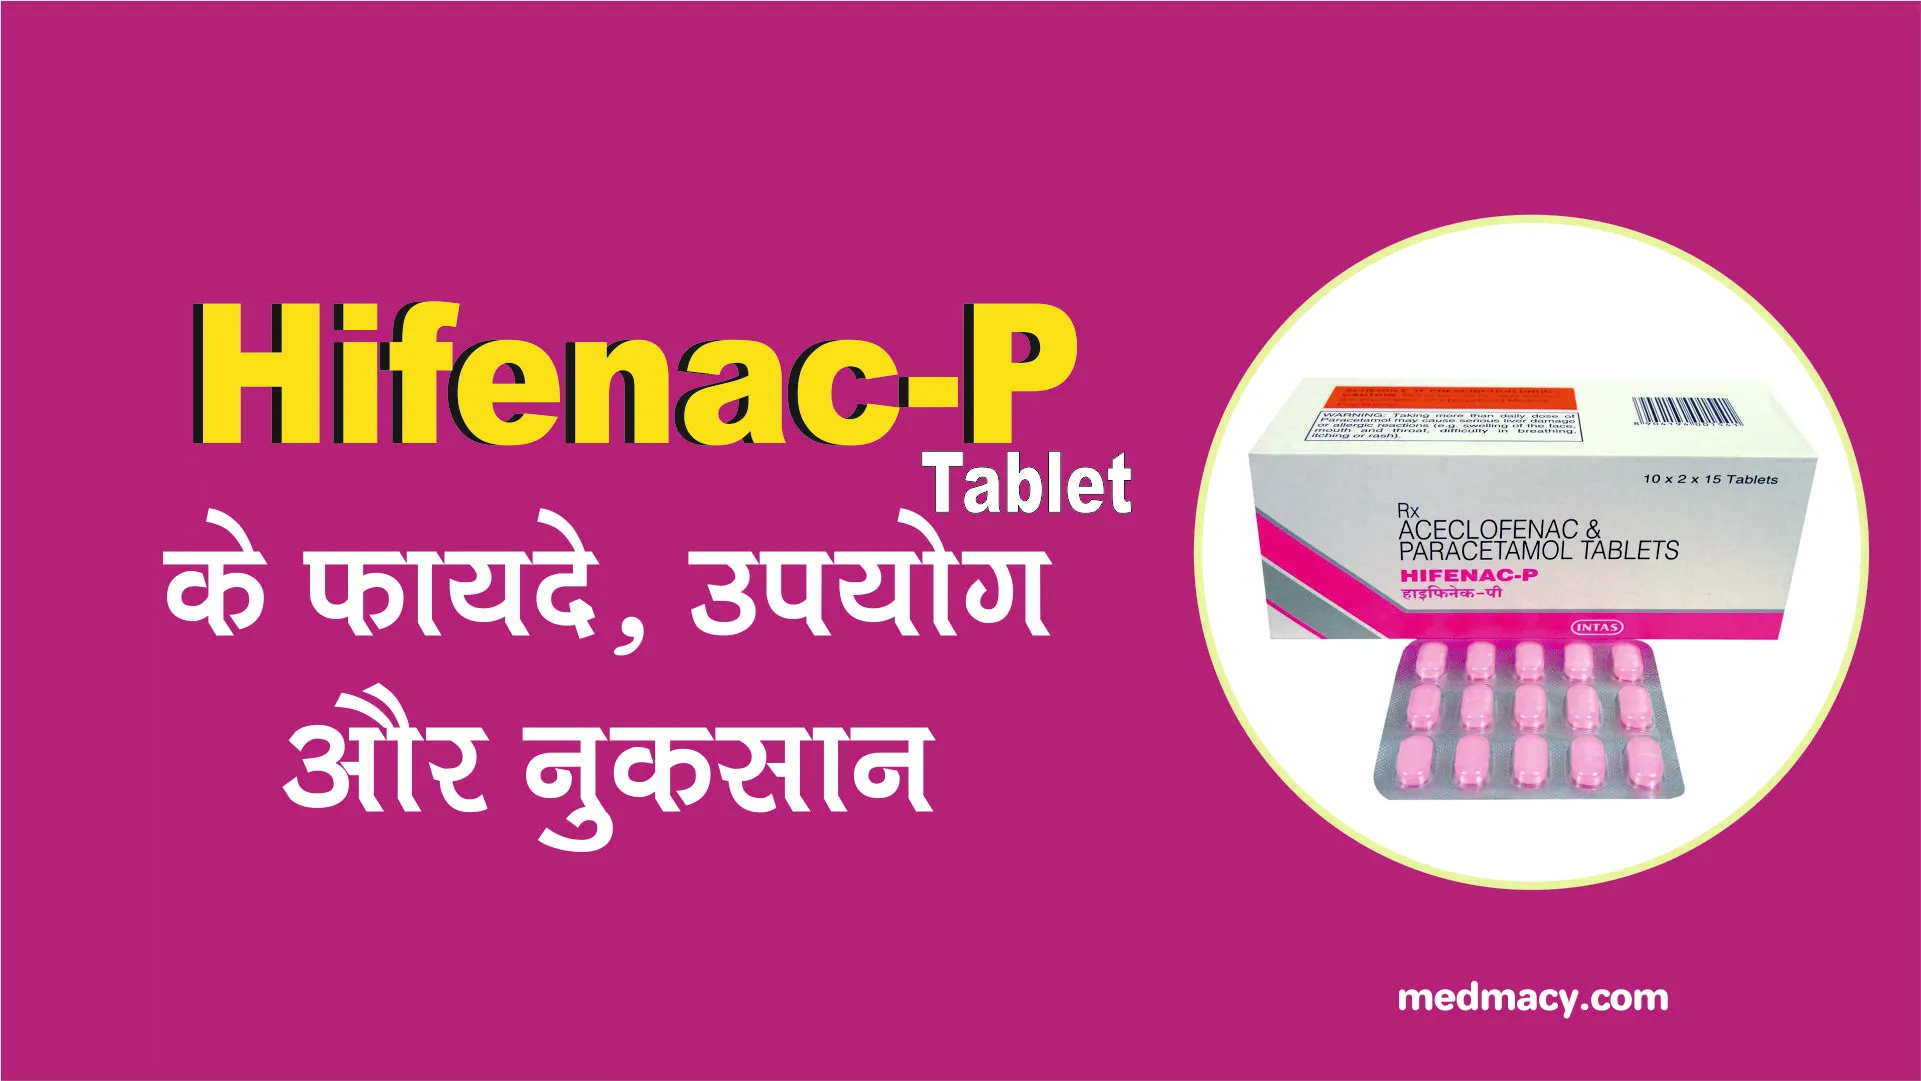 Hifenac P Tablet Uses in Hindi